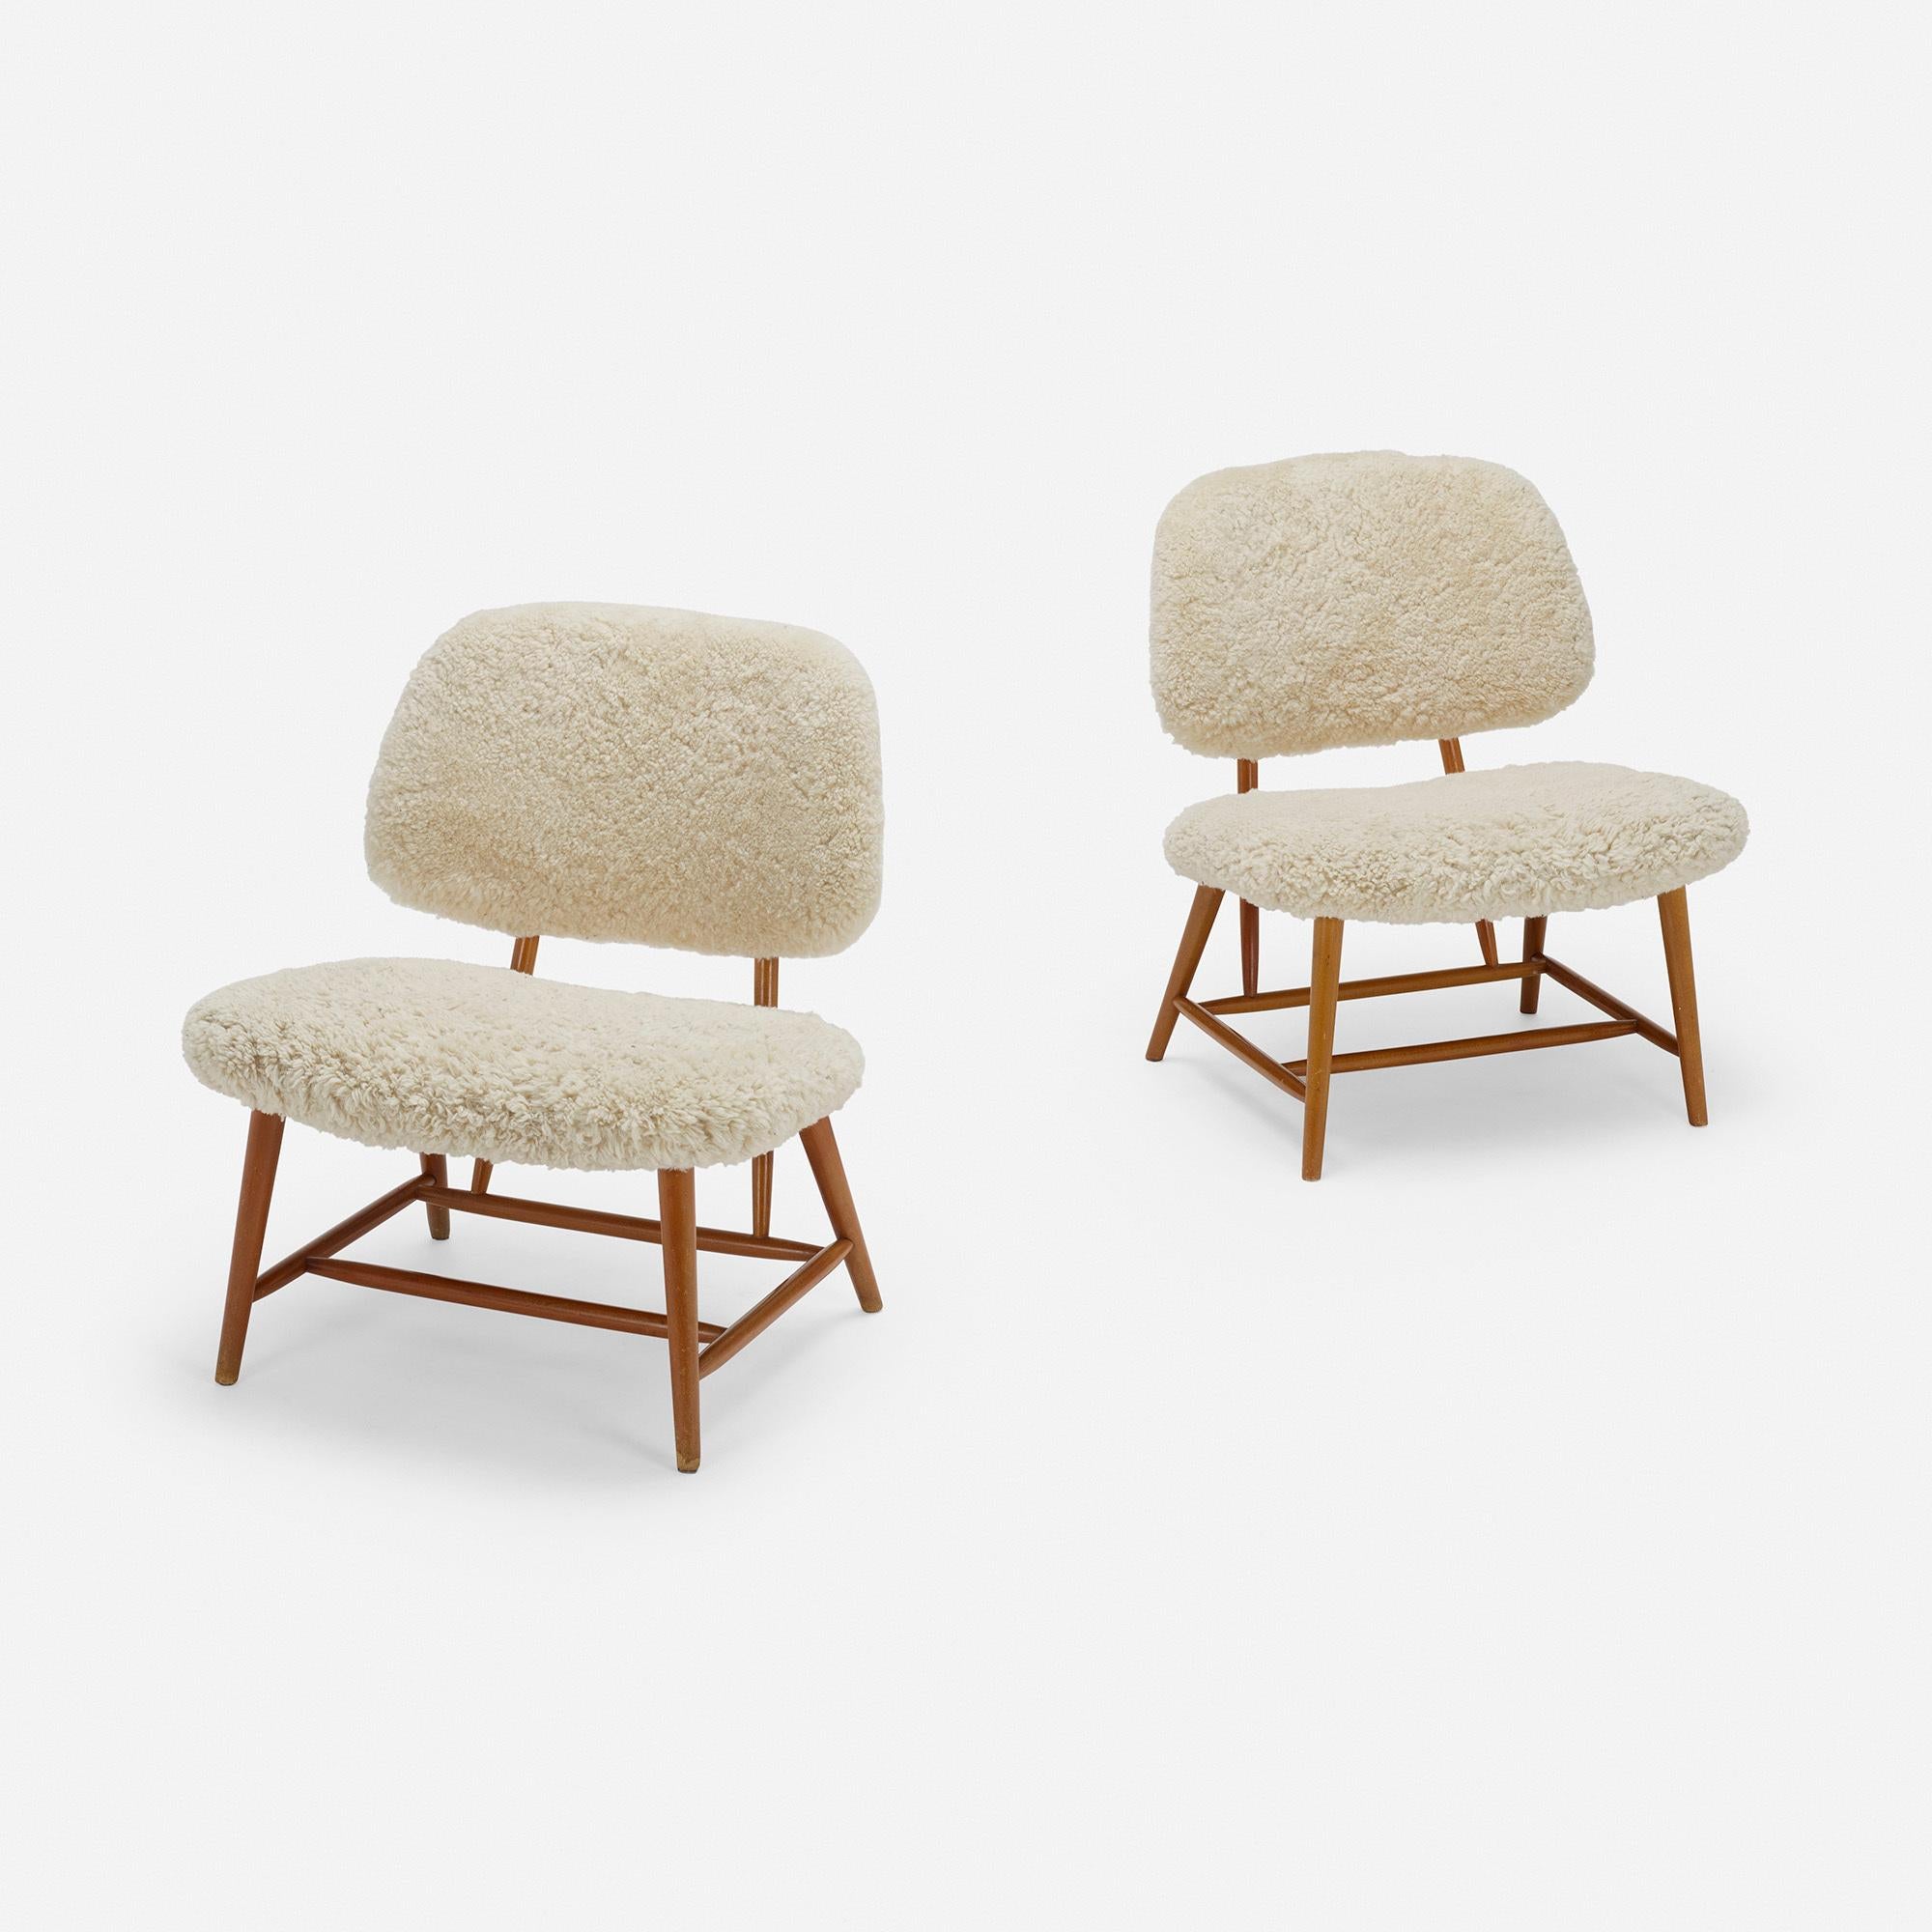 Ein Paar Teve-Stühle von Alf Svensson.

Herstelleretikett aus Aluminium auf der Unterseite jedes Exemplars 